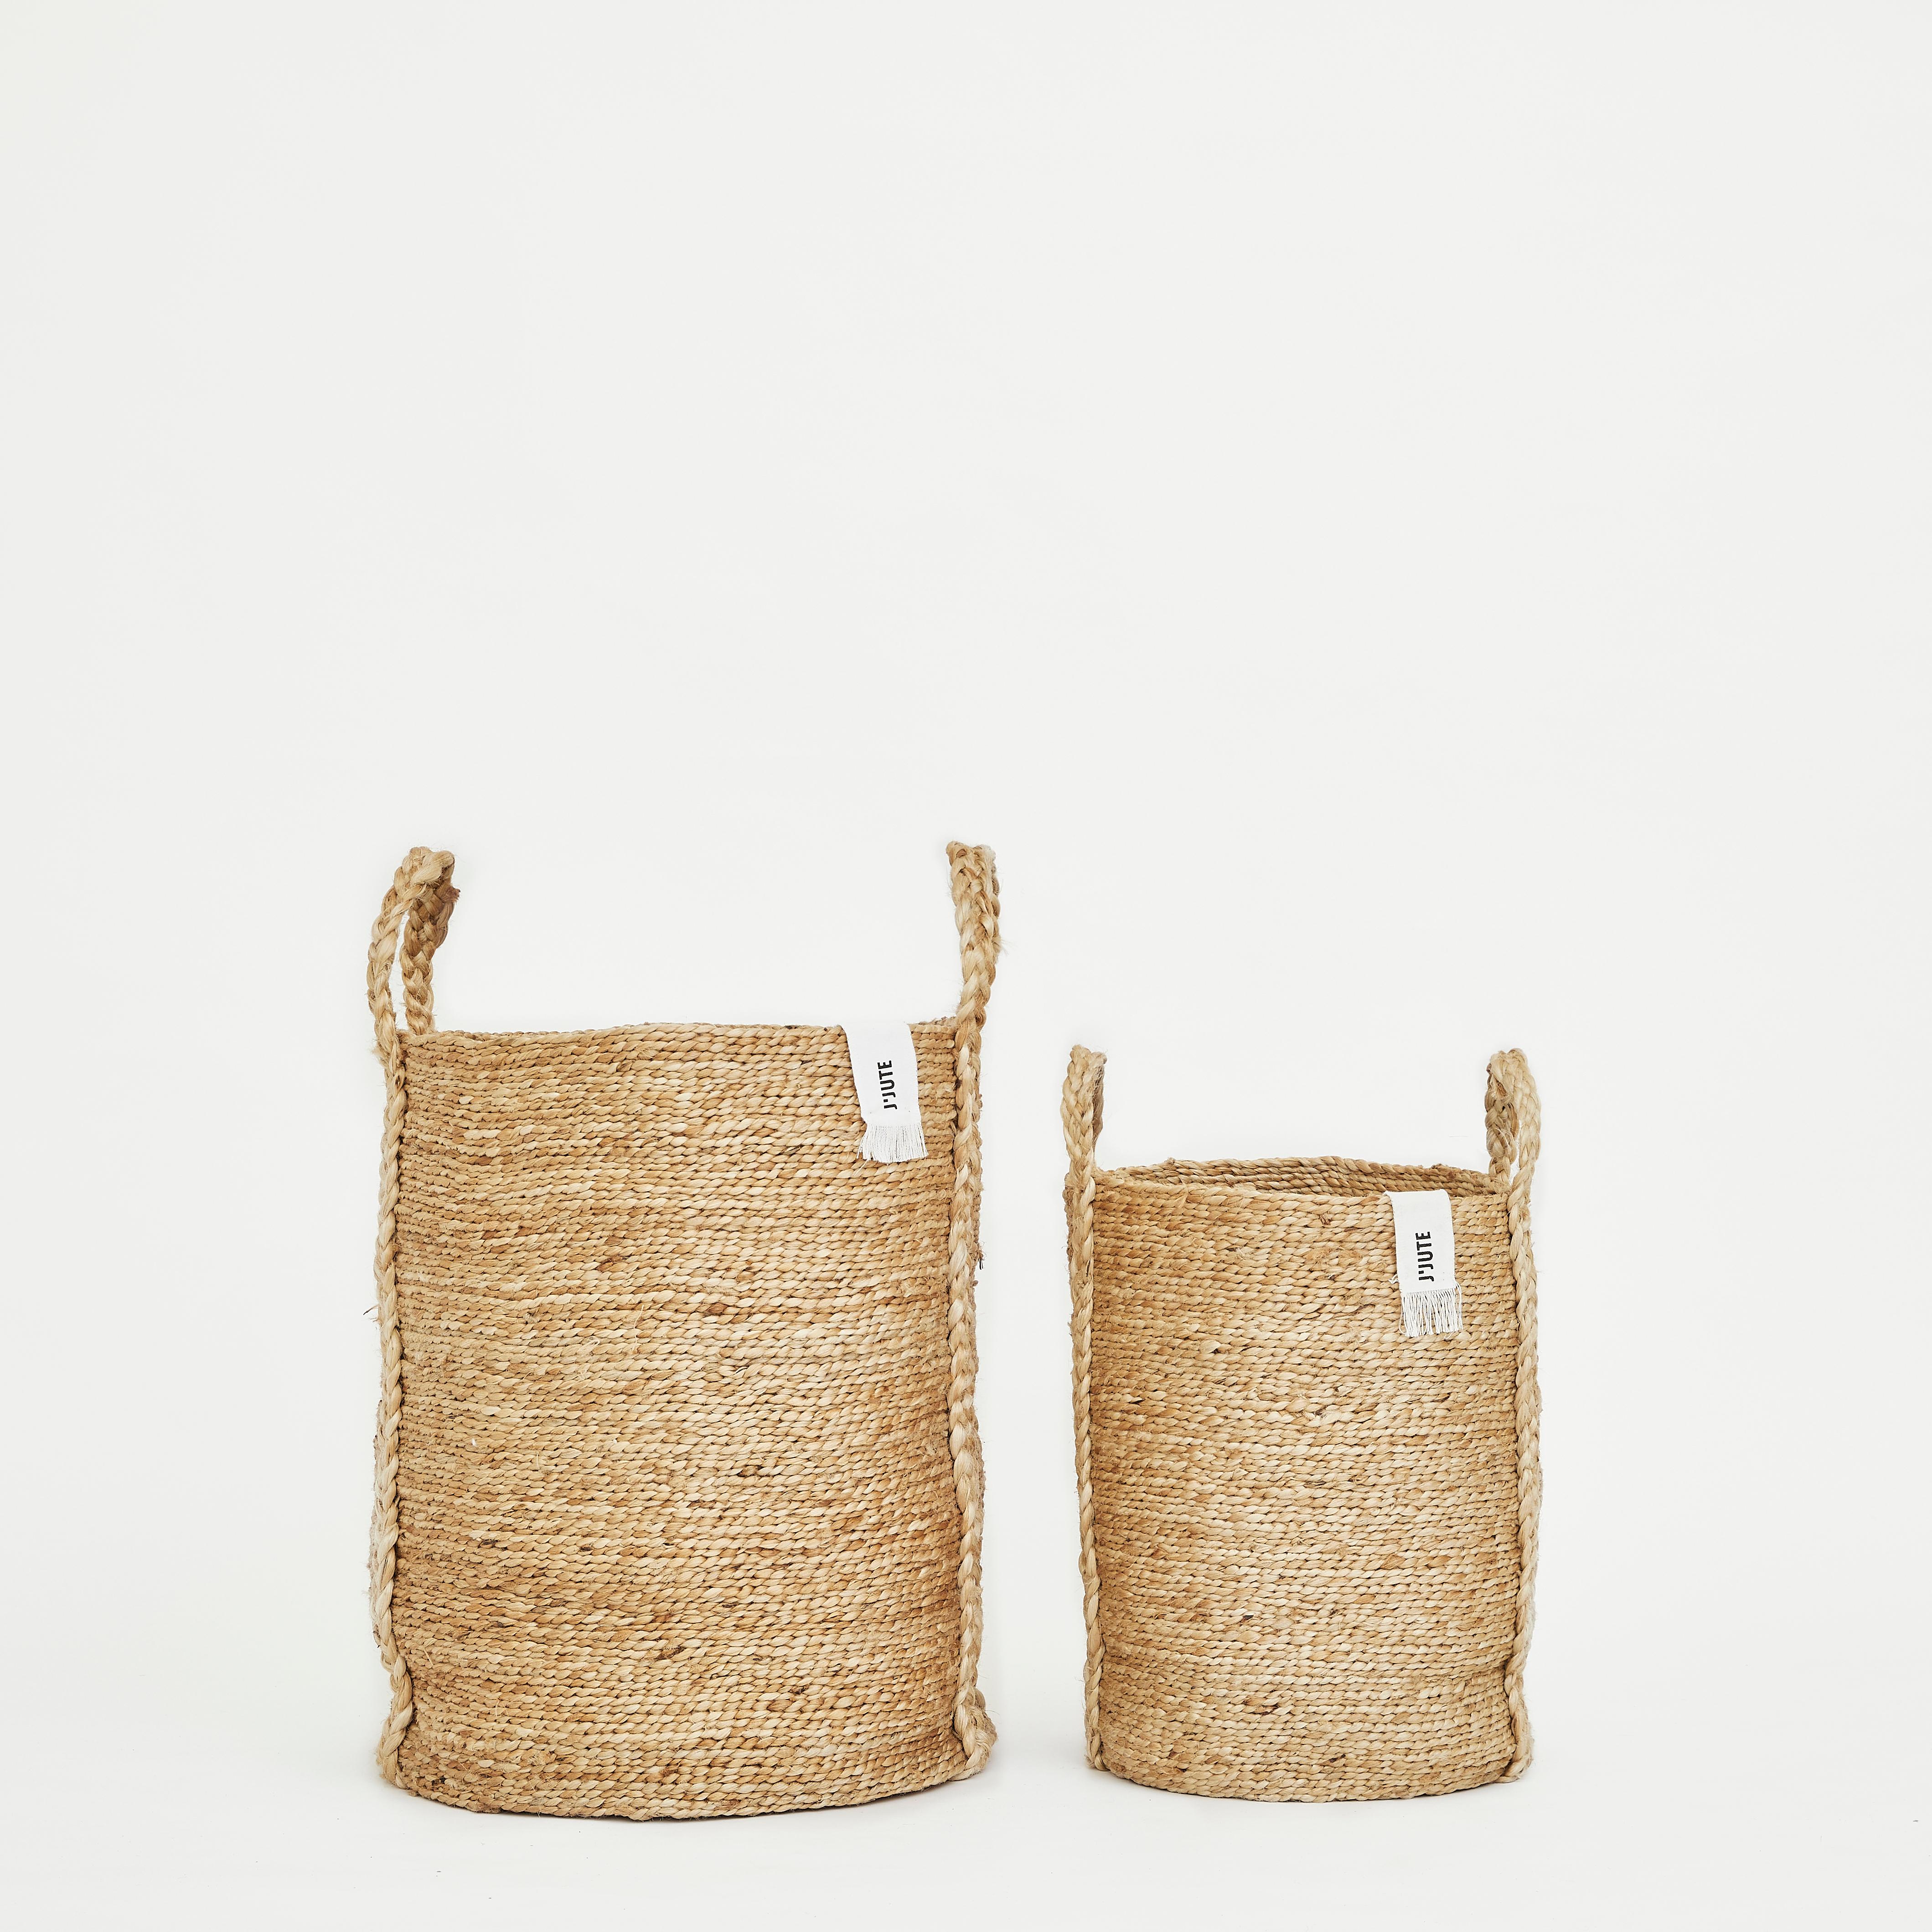 Hand-Woven Handmade Jute Basket Mosman Medium Natural by J'Jute For Sale